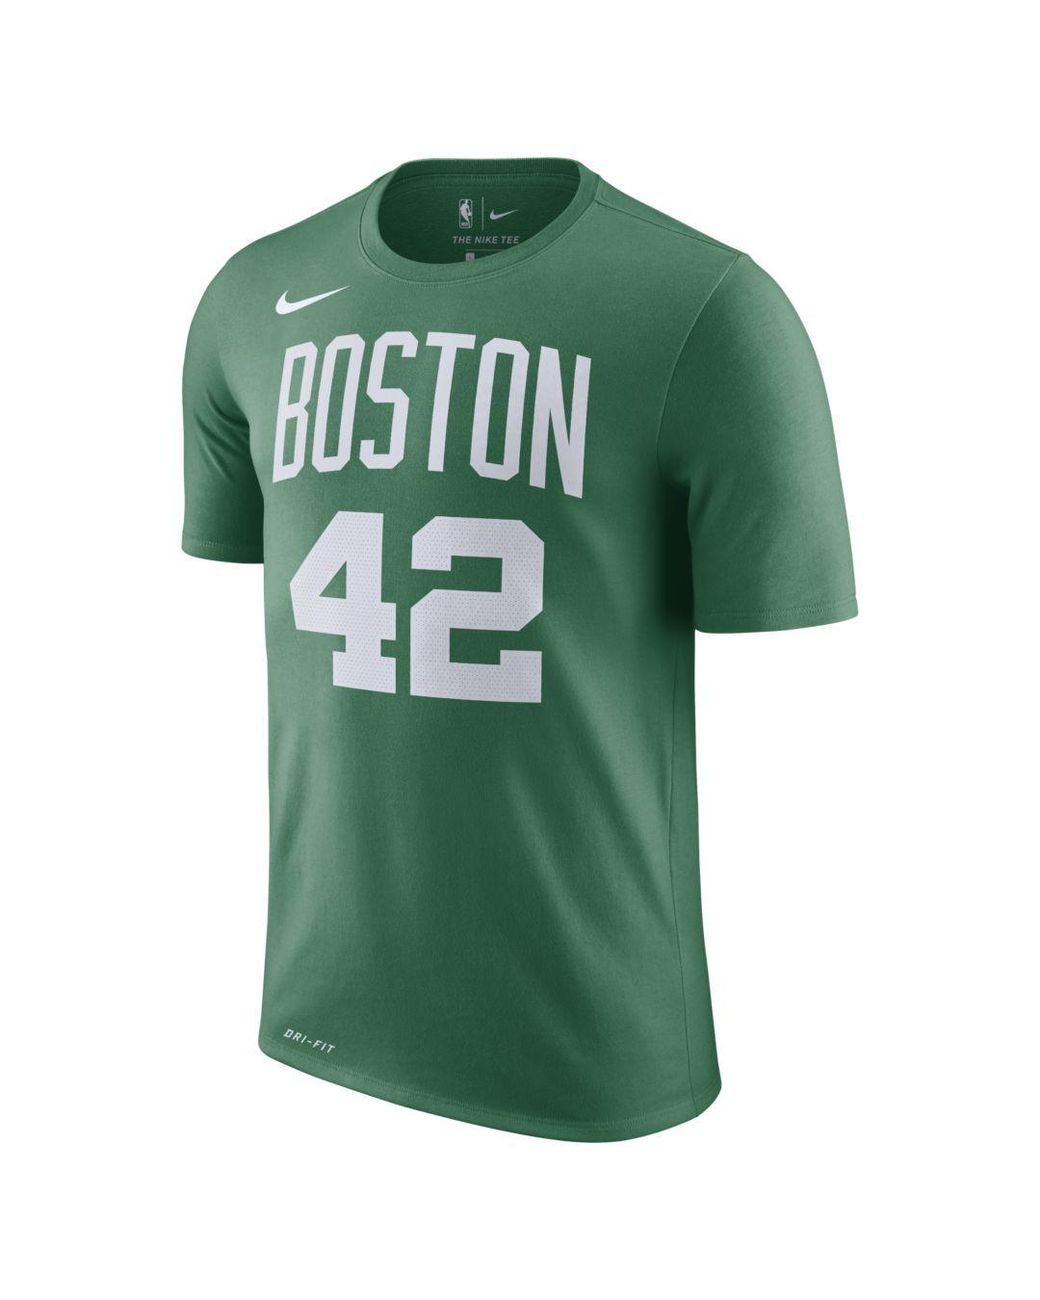 Nike, Shirts, Al Horford Celtics Jersey